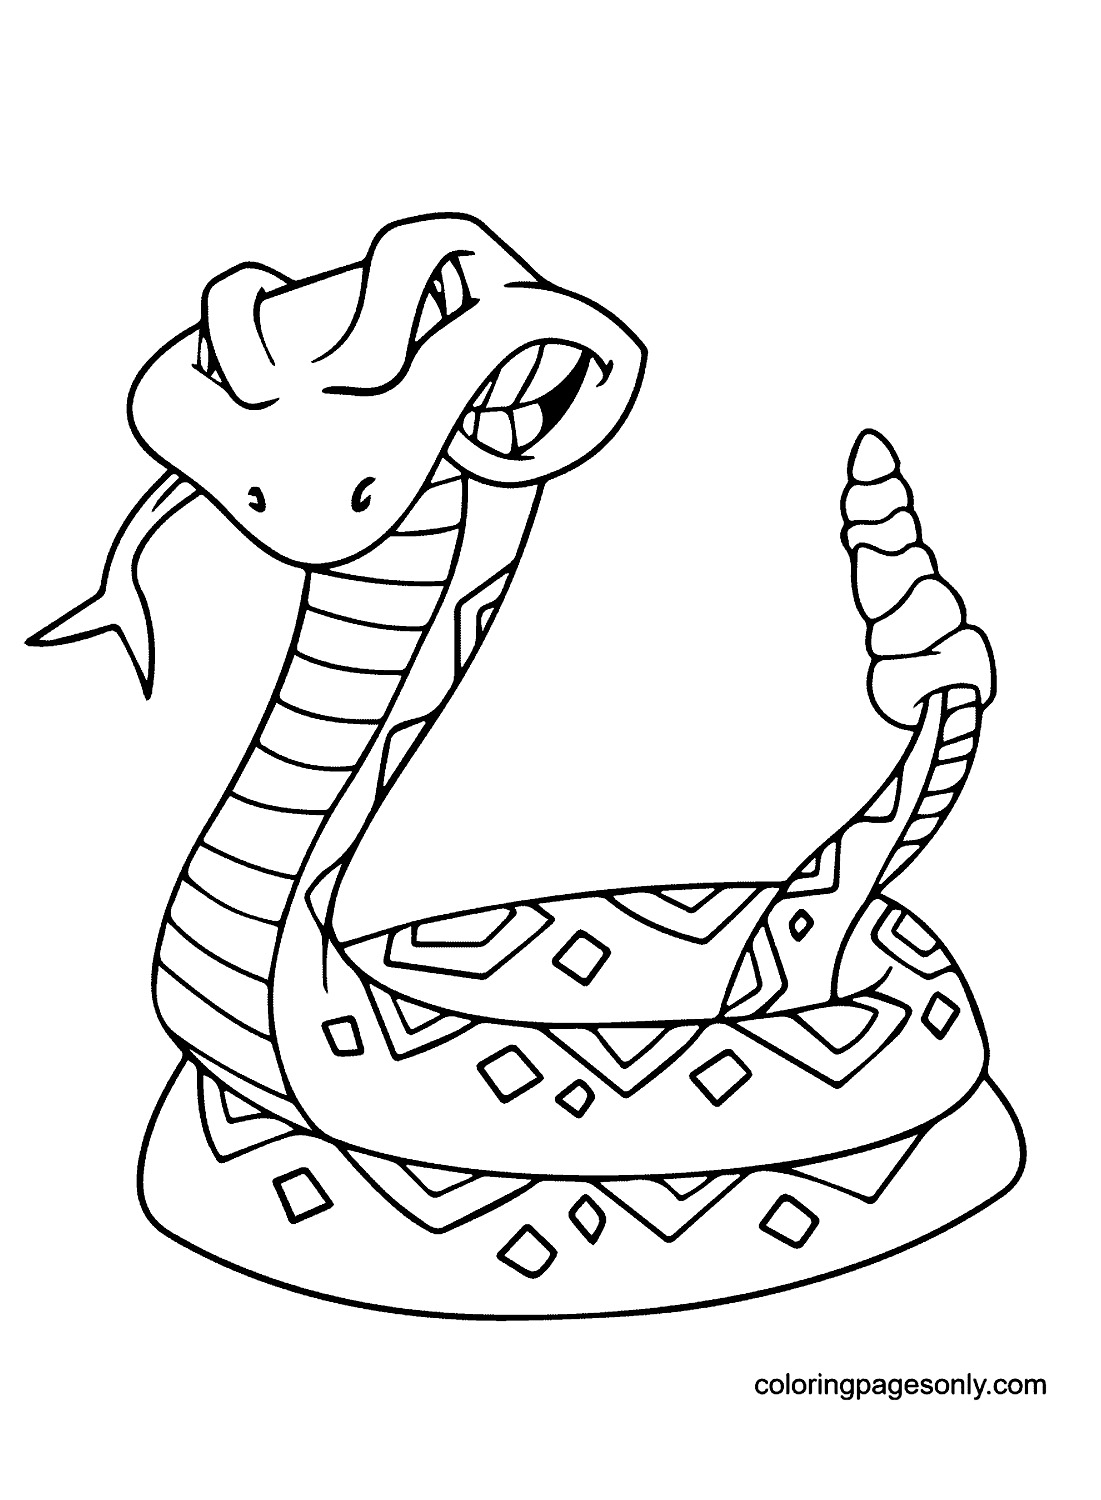 Гремучая змея из Snake